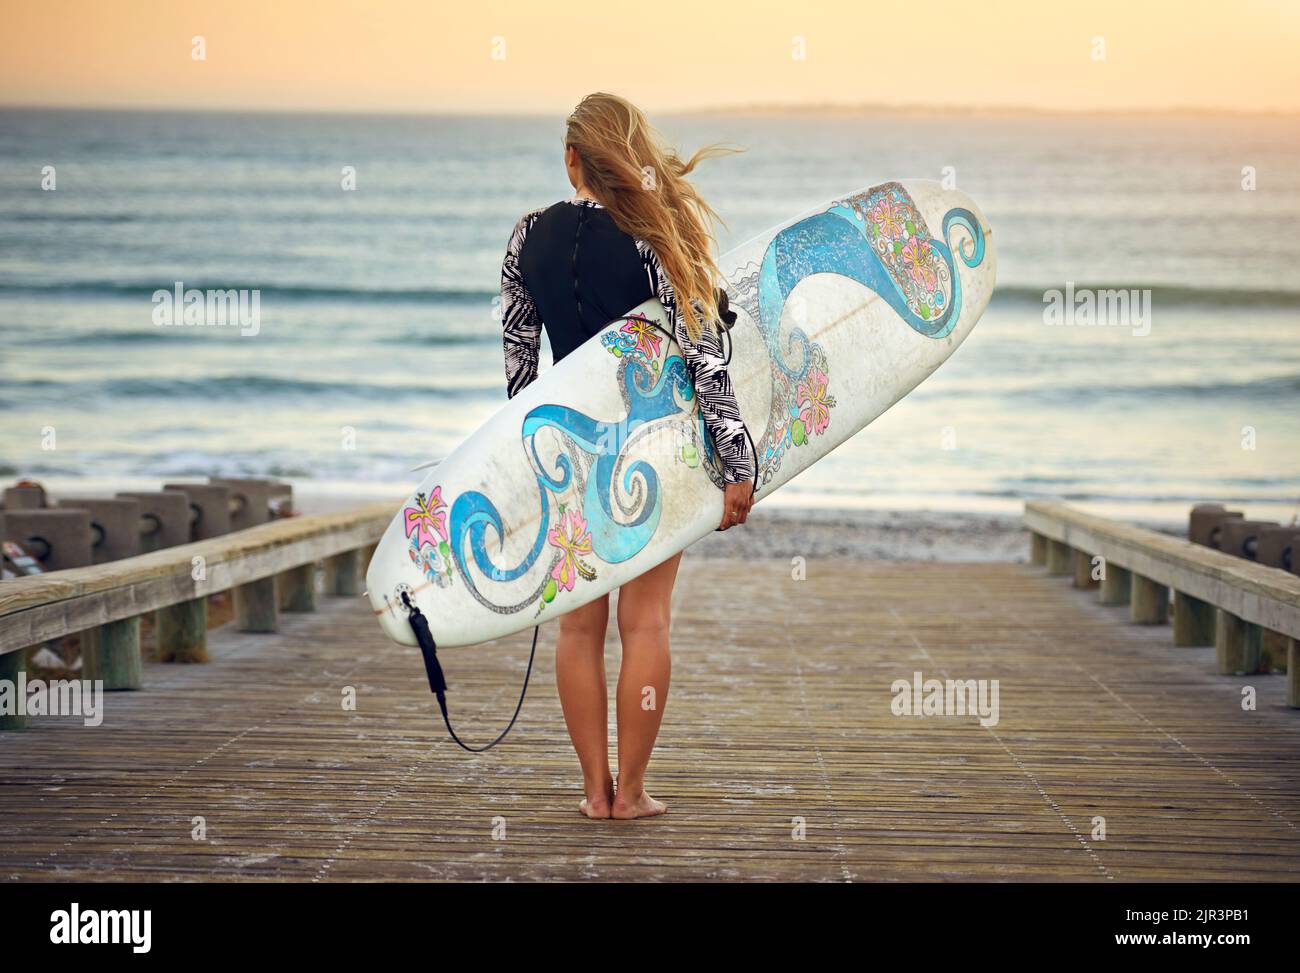 L'oceano è la sua casa. Ripresa retroversa di una giovane surfista irriconoscibile in piedi con la tavola da surf che guarda sopra l'oceano. Foto Stock